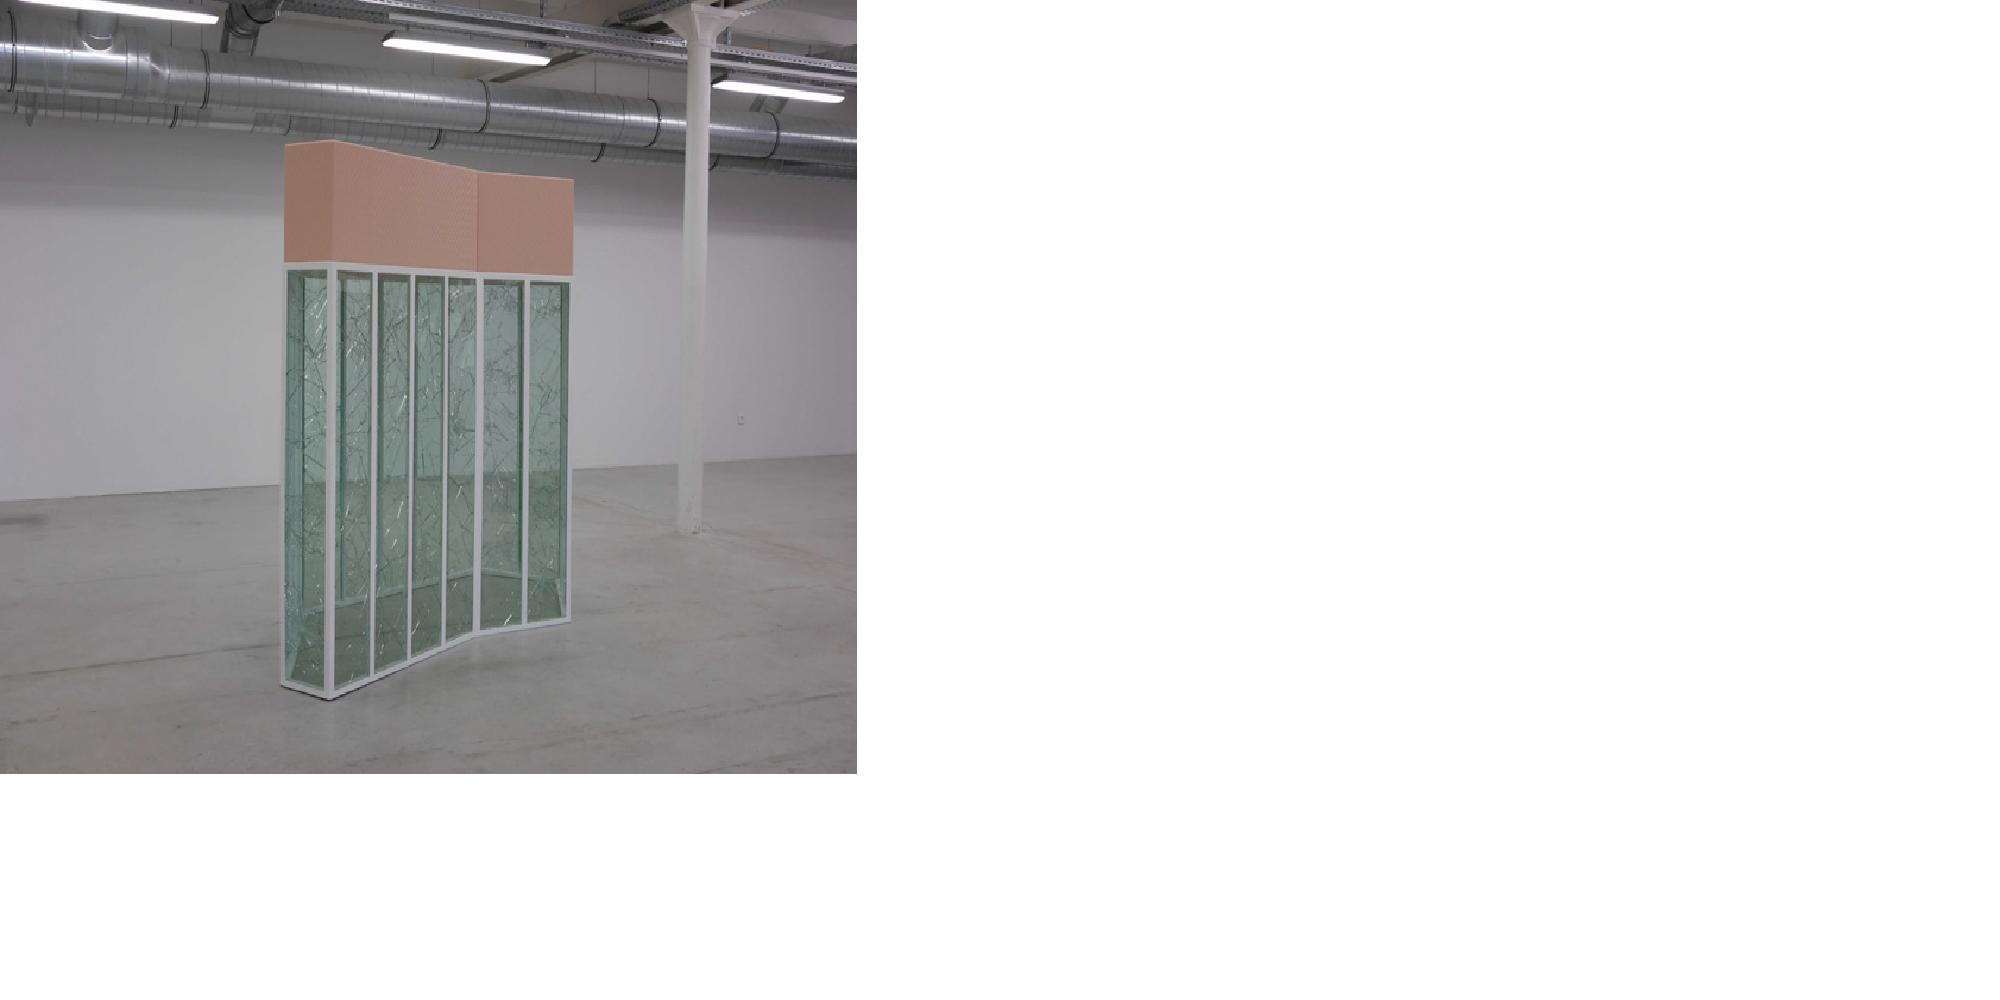 Nicolas Momein, Il pleut c’est tout ce qu’il sait faire, 2014, Production Astérides avec le soutien
de La Galerie, centre d’art de Noisy-le-Sec, et Frédéric Vigy. Courtesy de l’artiste et Galerie White Project, Paris.